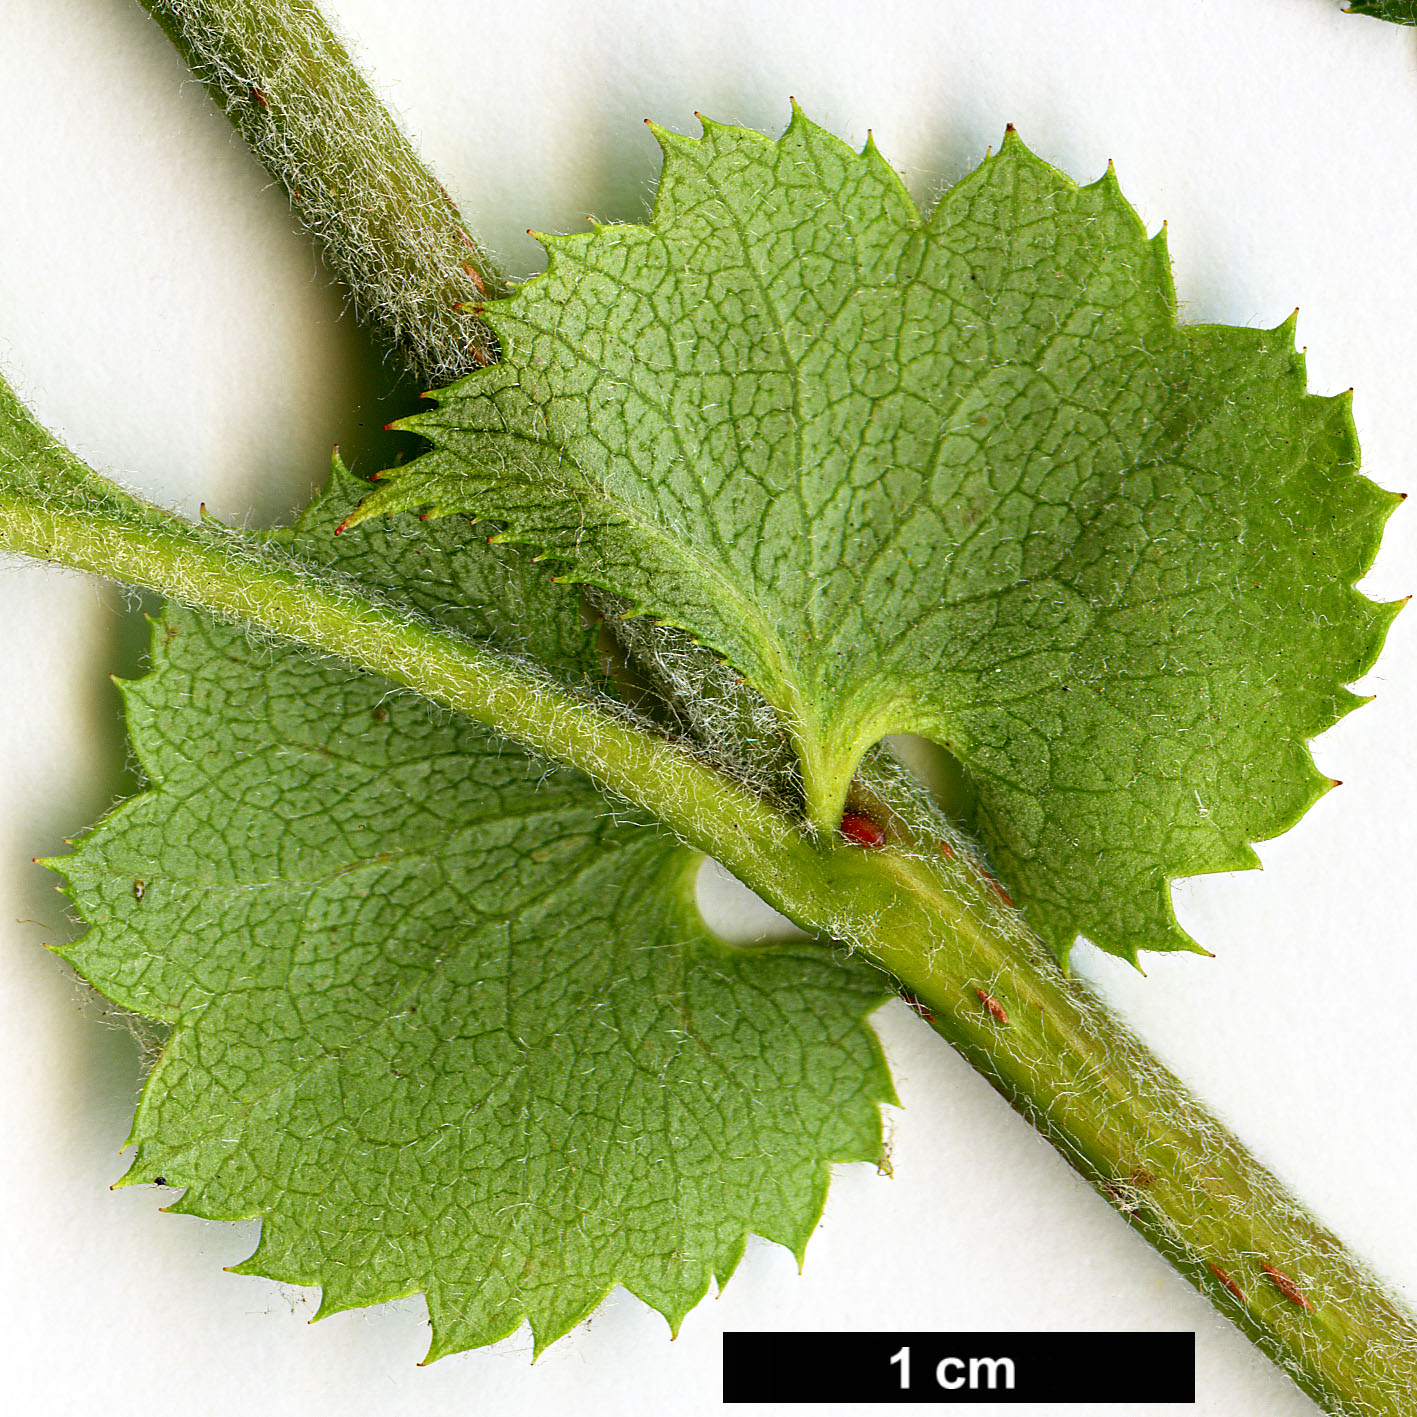 High resolution image: Family: Rosaceae - Genus: Crataegus - Taxon: nigra